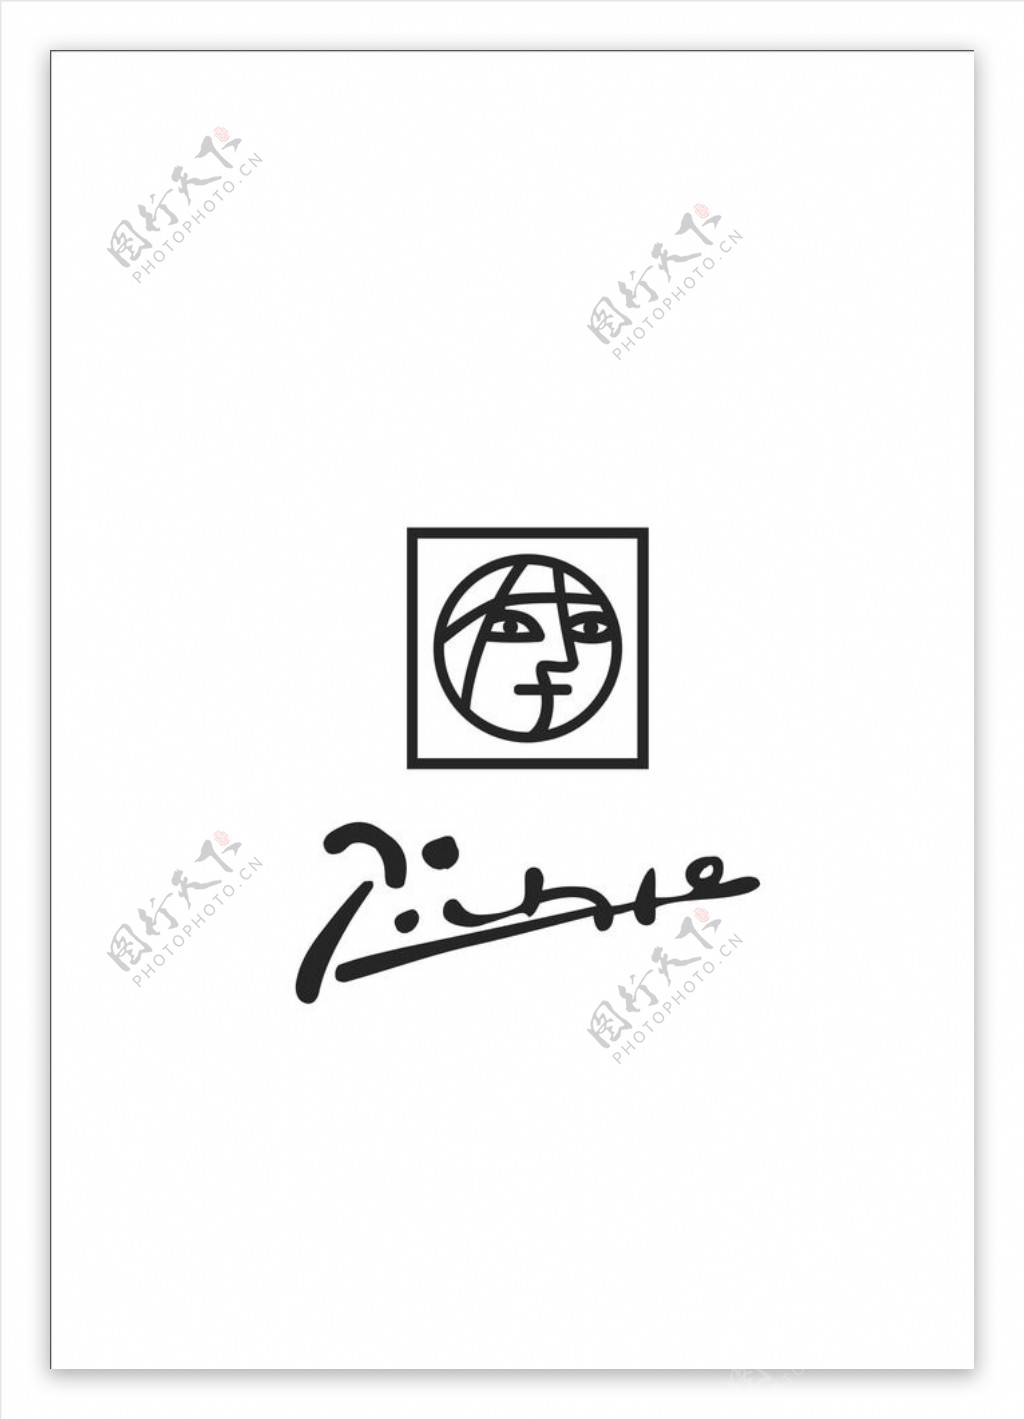 毕加索logo图片